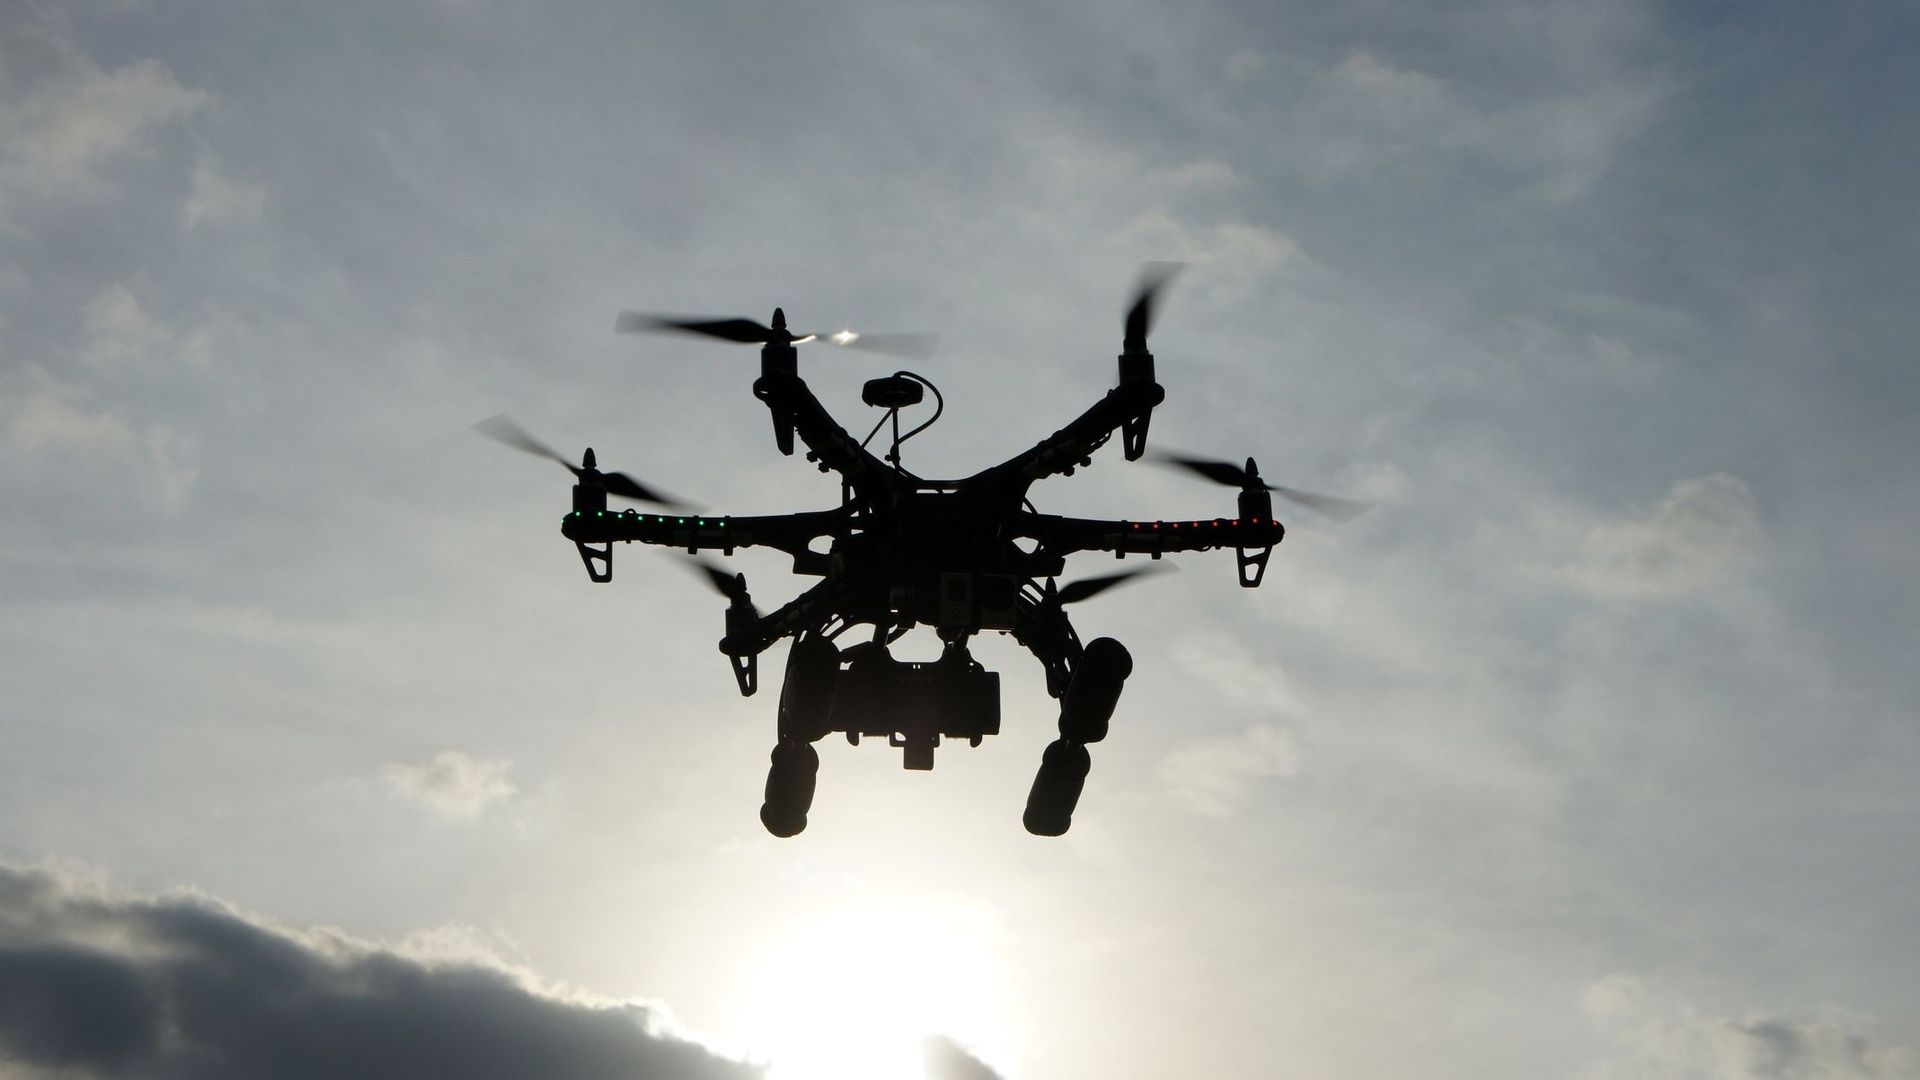 Comment des drones autonomes peuvent aider à rendre la ville encore plus "intelligente".